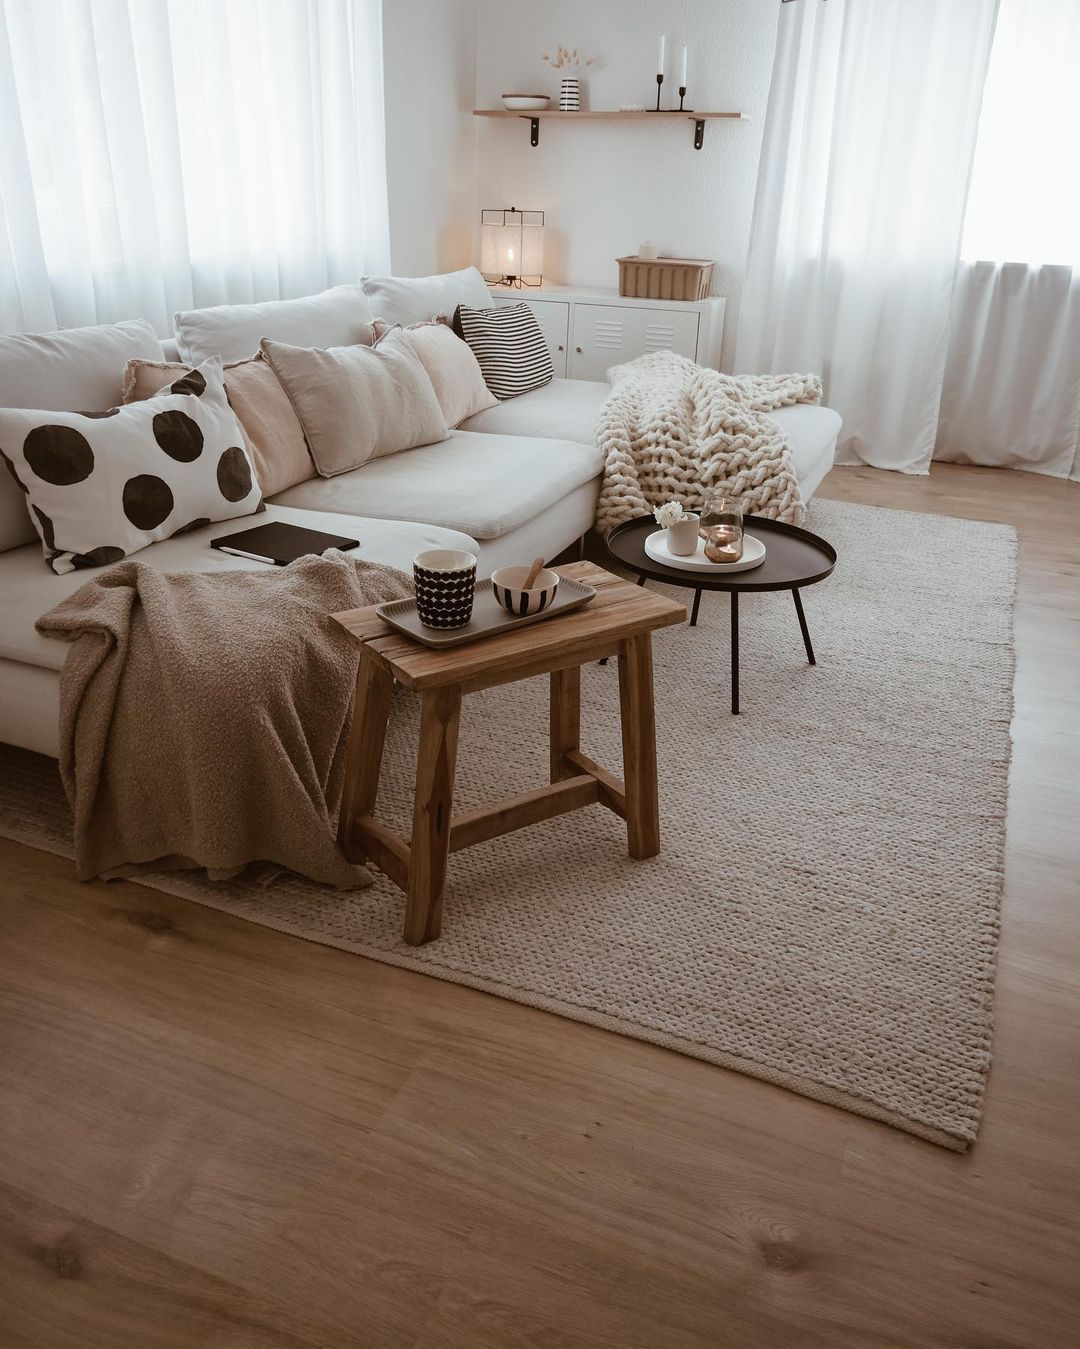 Penggunaan furnitur yang minimalis pada interior bergaya Skandinavia